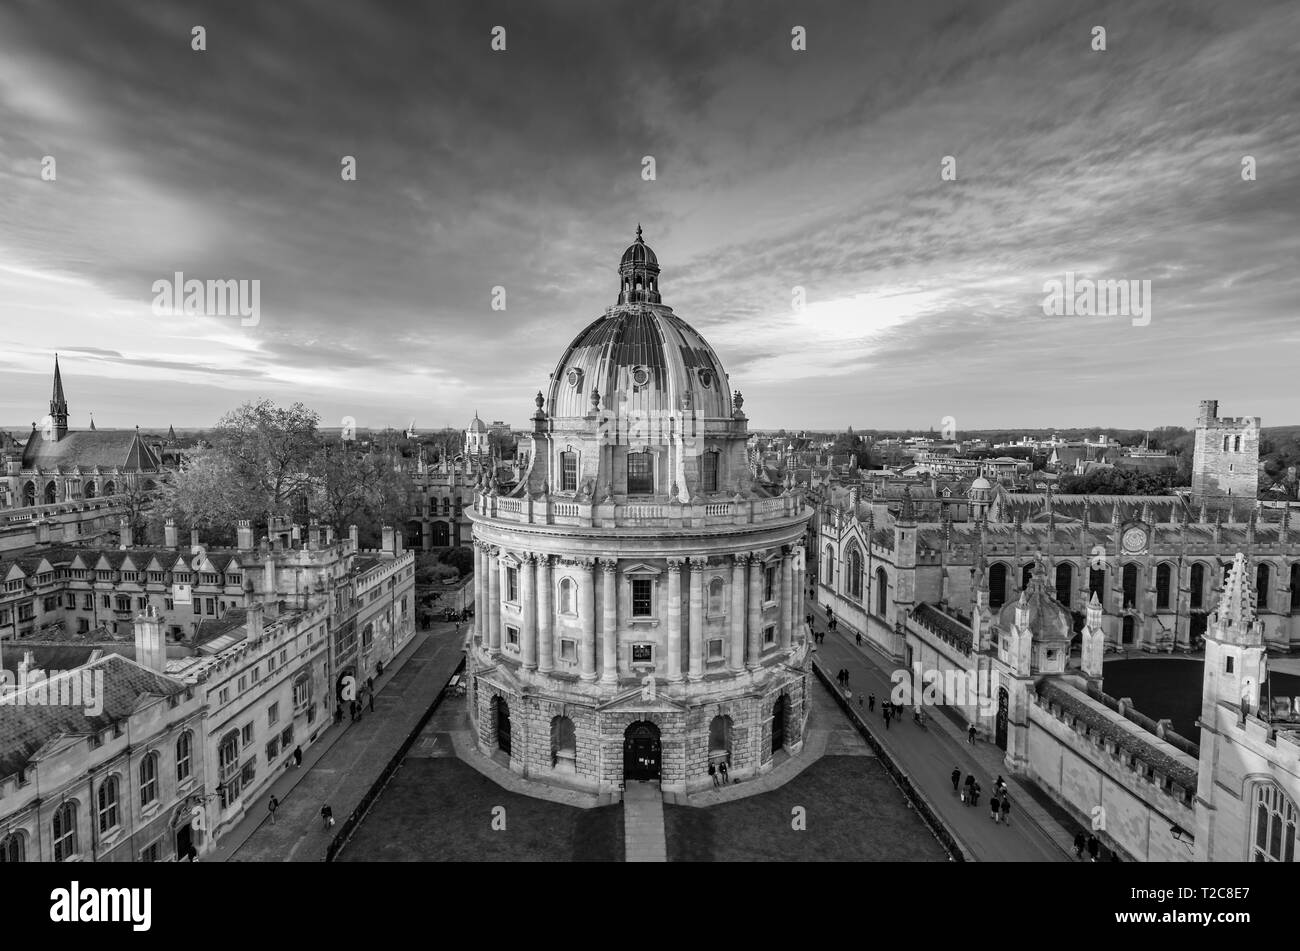 Schwarz-weiß Bild von Radcliffe Camera in Oxford. Stockfoto